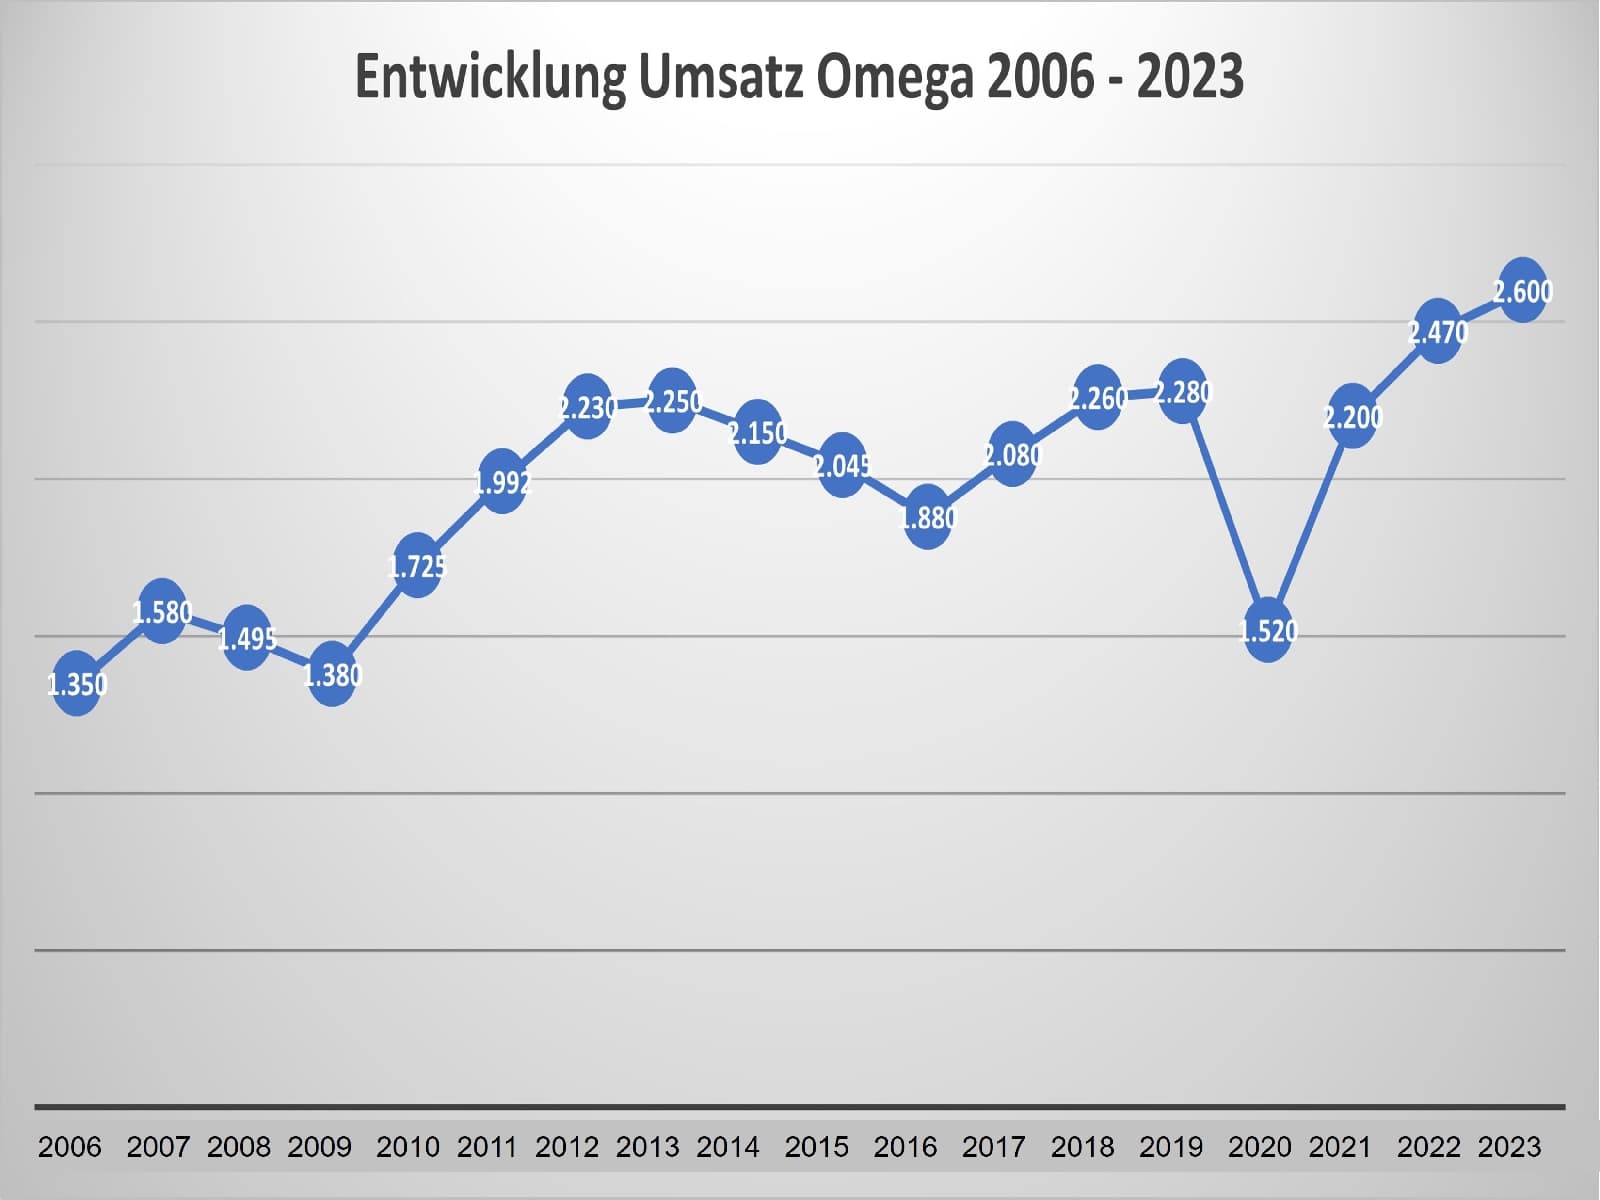 Umsatzentwicklung Omega 2006 - 2023